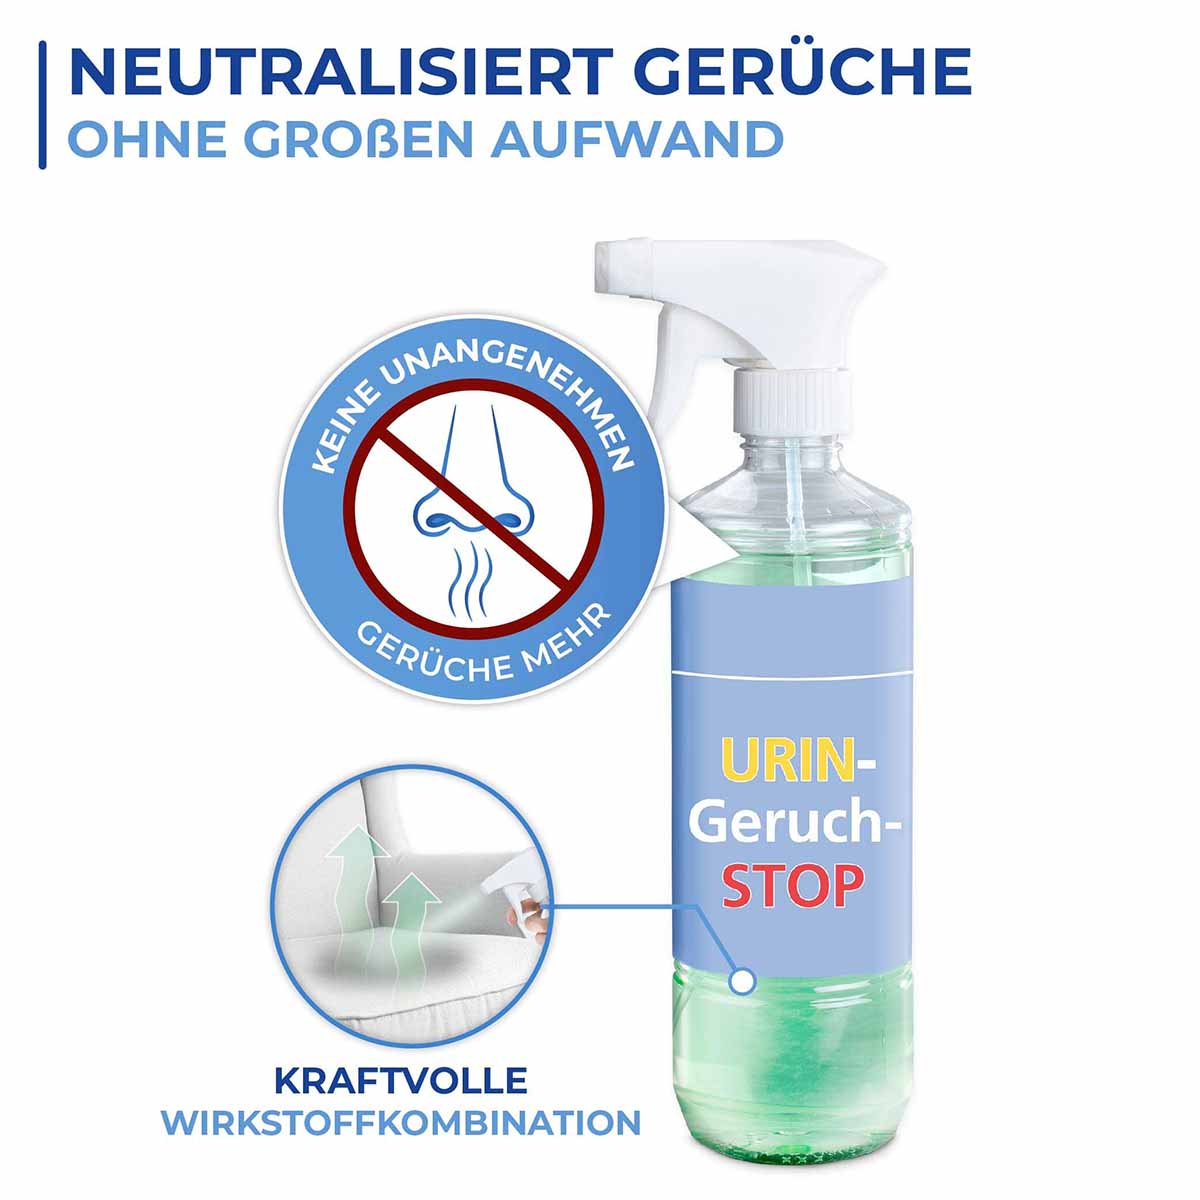 Urin-Geruch-Stop, 500 ml